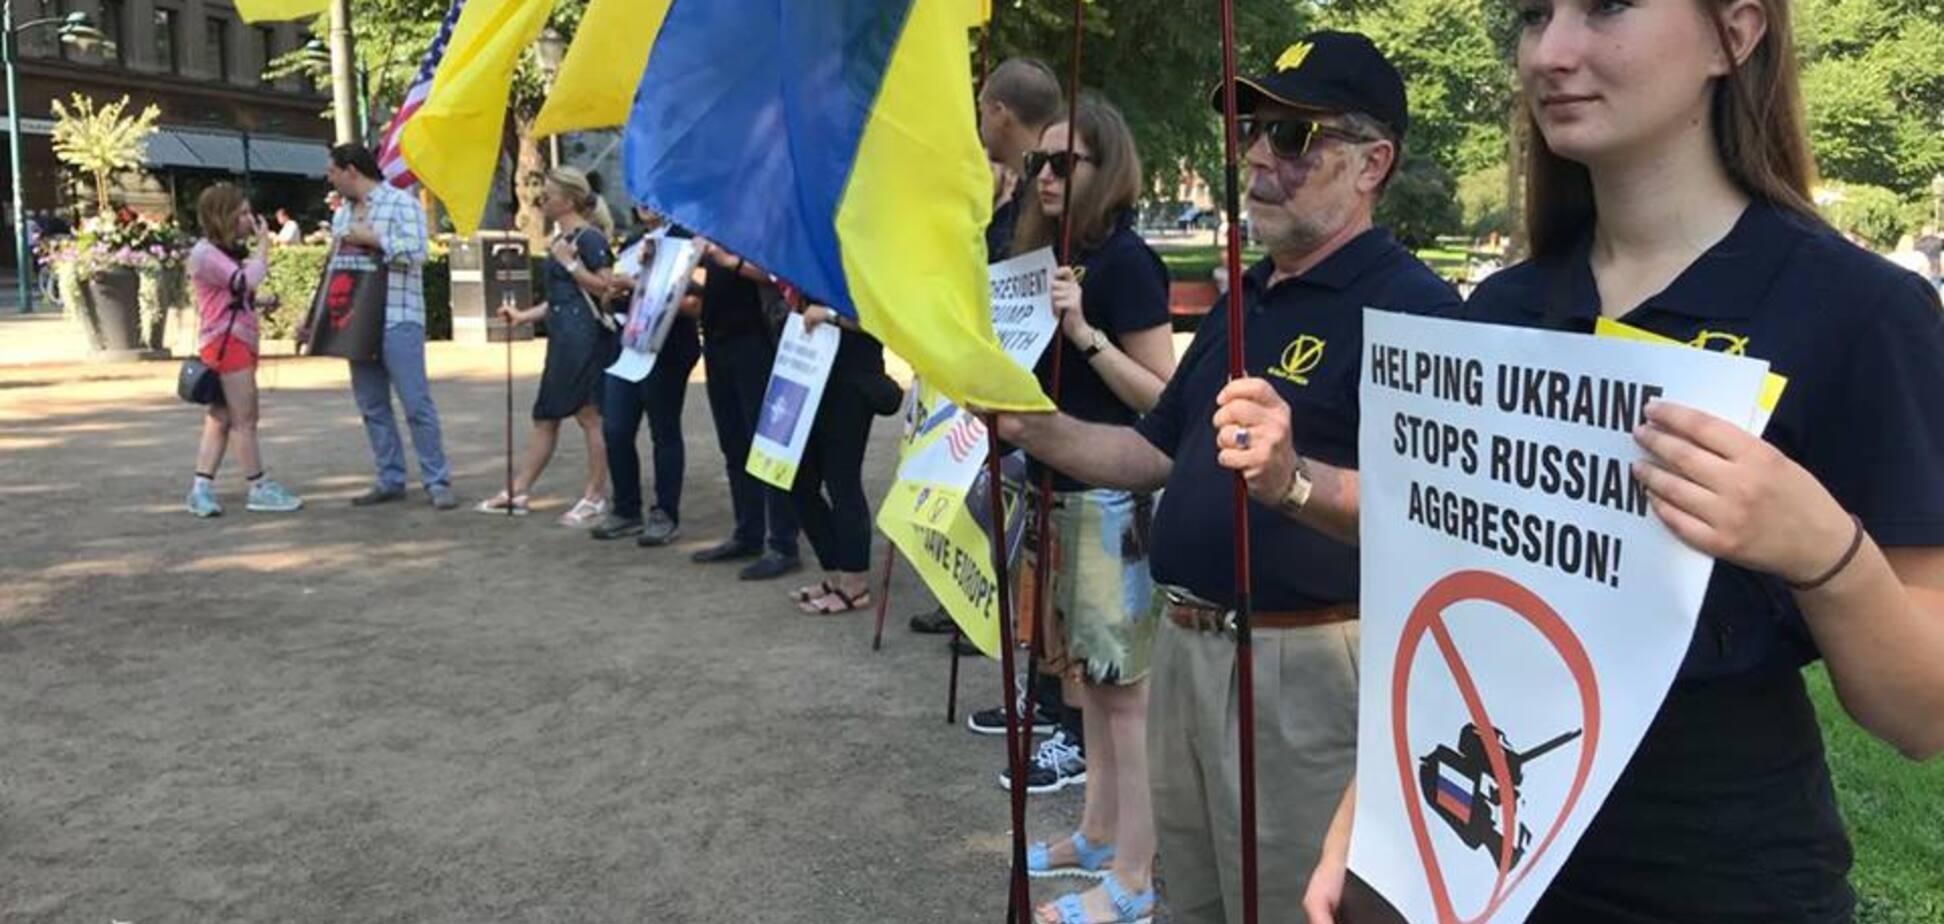 Трамп, дави: украинцы в Хельсинки 'передали привет' Путину